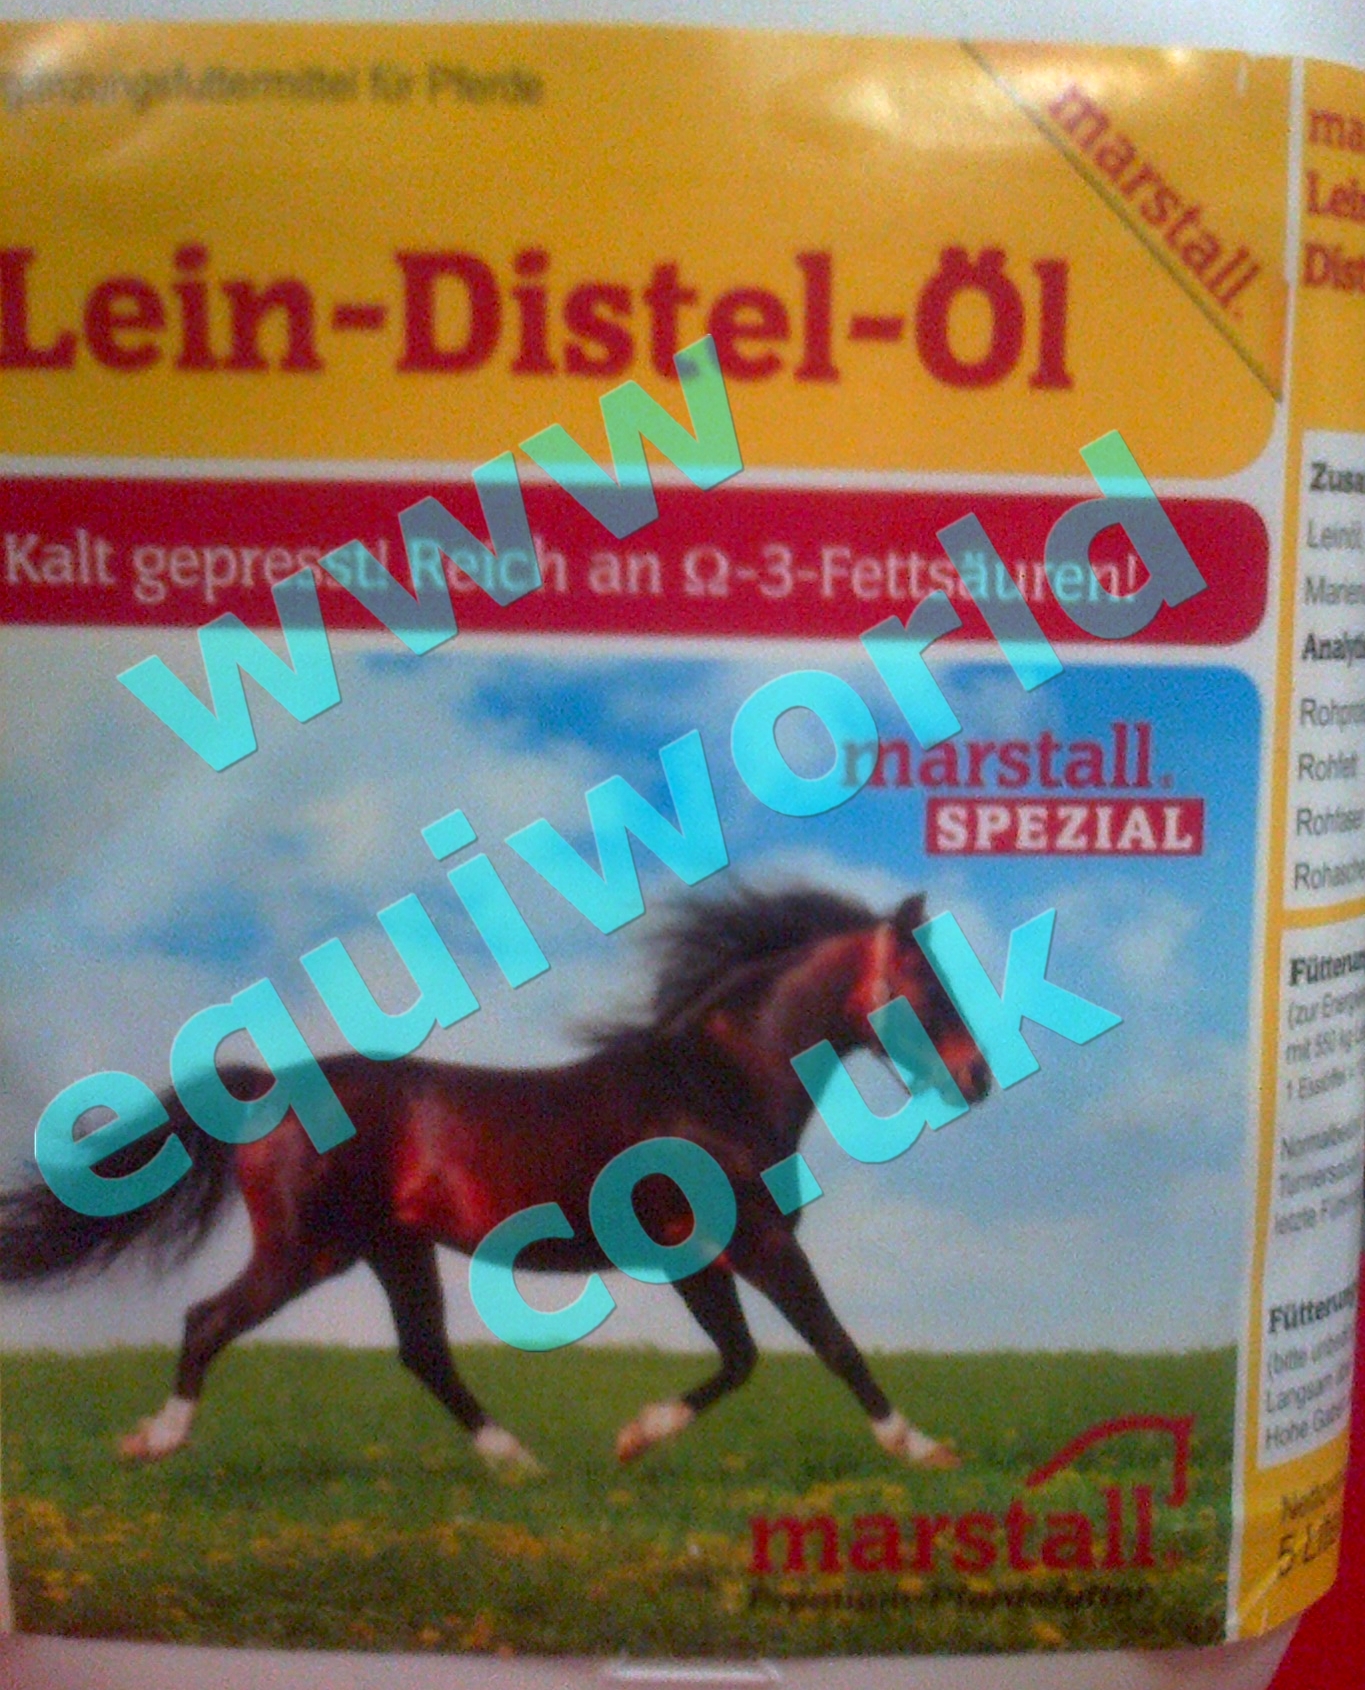 Marstall Lein-Distel-Öl - Linseed and milk thistle oil